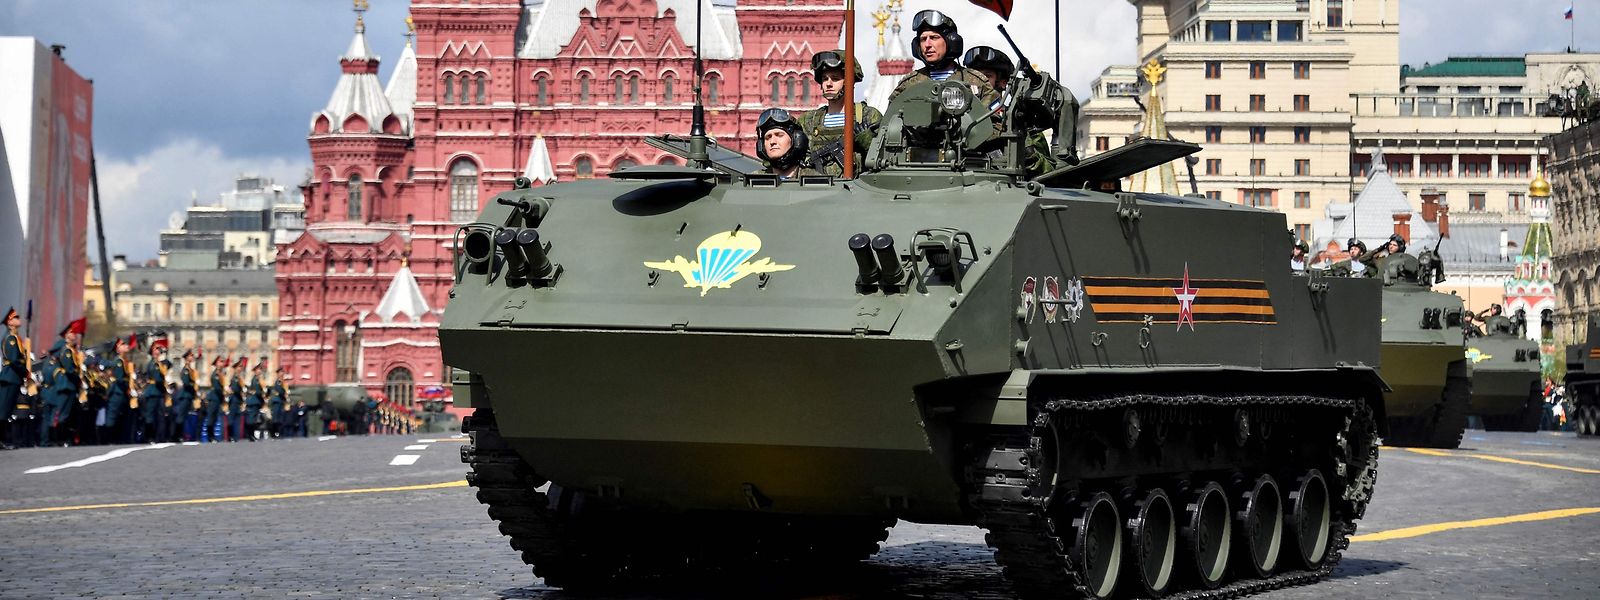 Militärparade auf dem Roten Platz in Moskau zum „Tag des Sieges“ am 9. Mai.